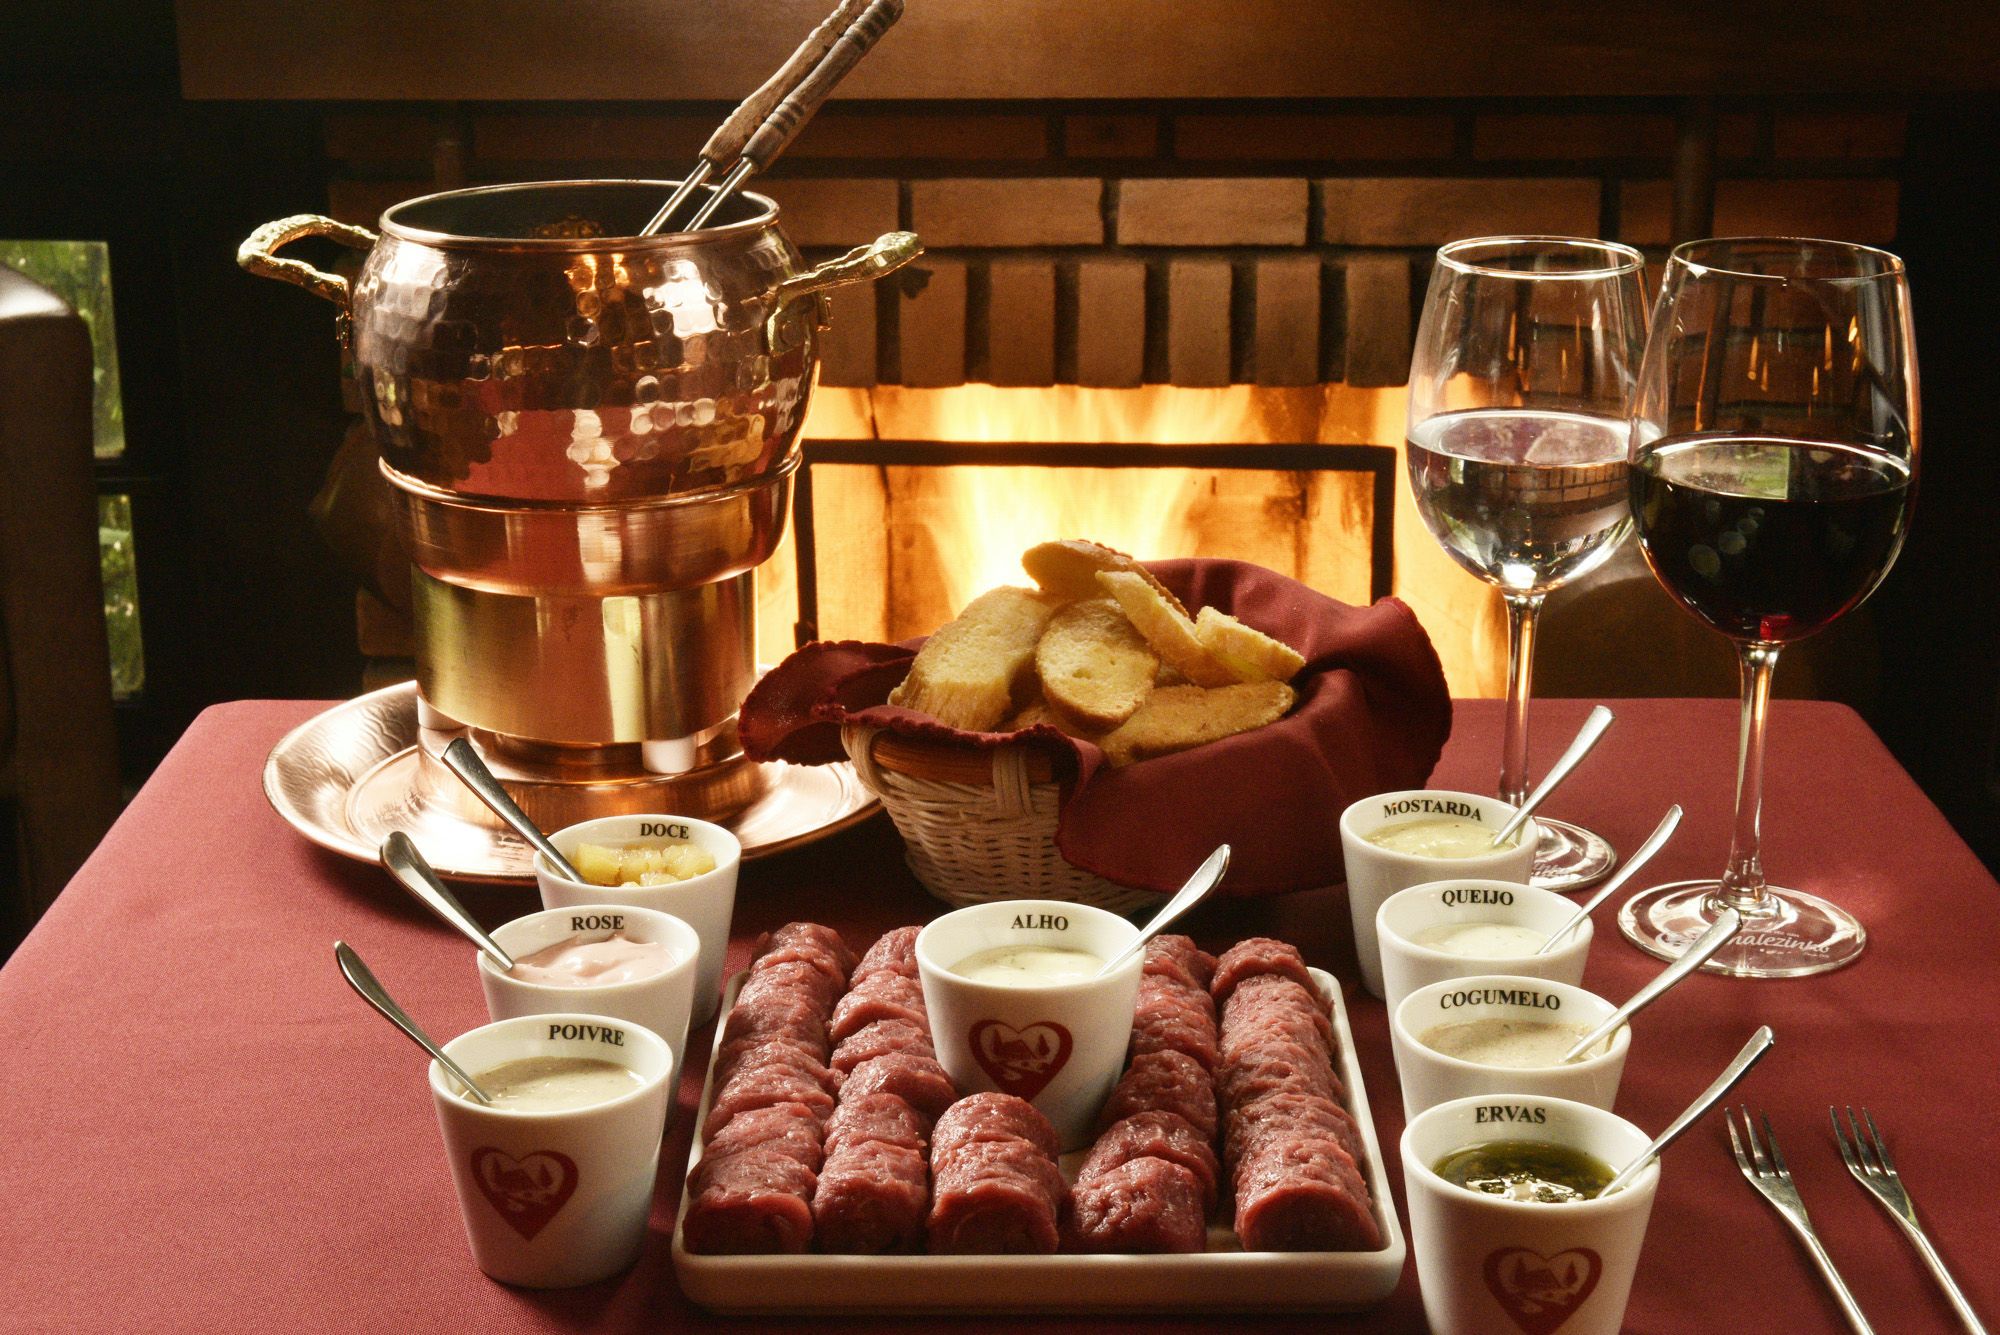 Chalezinho, a traditional fondue restaurant, opens its doors in Campos do Jordão